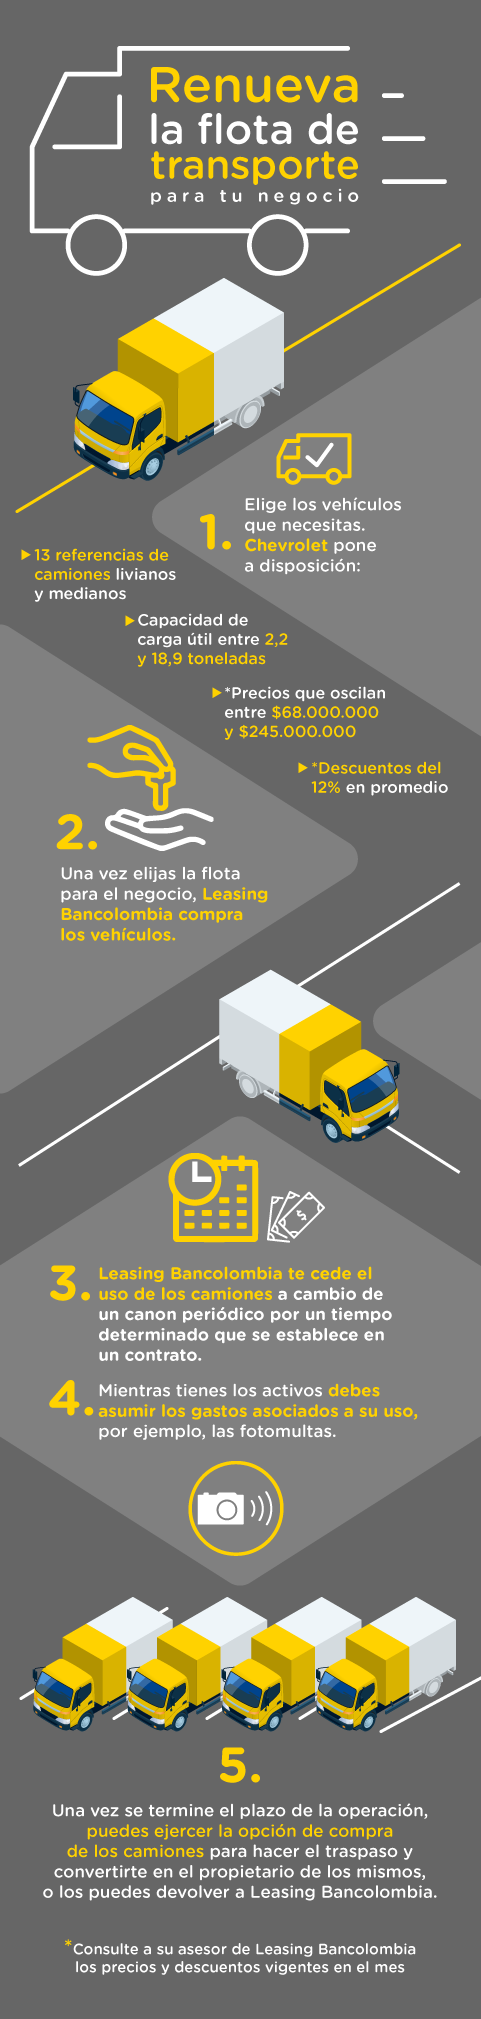 Infografía sobre el funcionamiento de la alianza entre Leasing Bancolombia y Chevrolet.